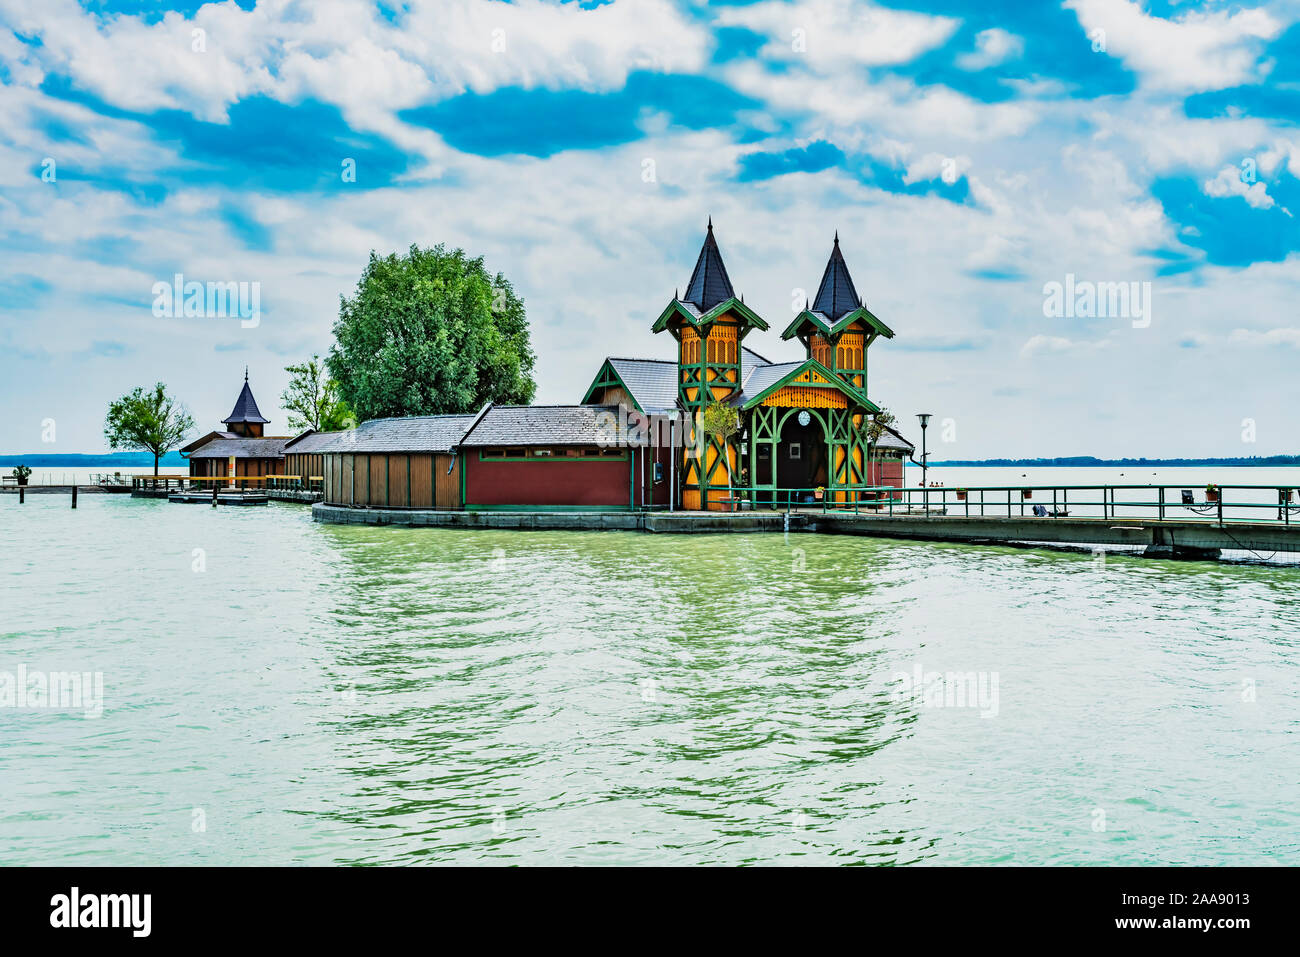 Stabilimento balneare costruito nel 1893 presso la spiaggia comunale di Keszthely sul Lago Balaton, Zala county, Western oltre Danubio, Ungheria, Europa Foto Stock